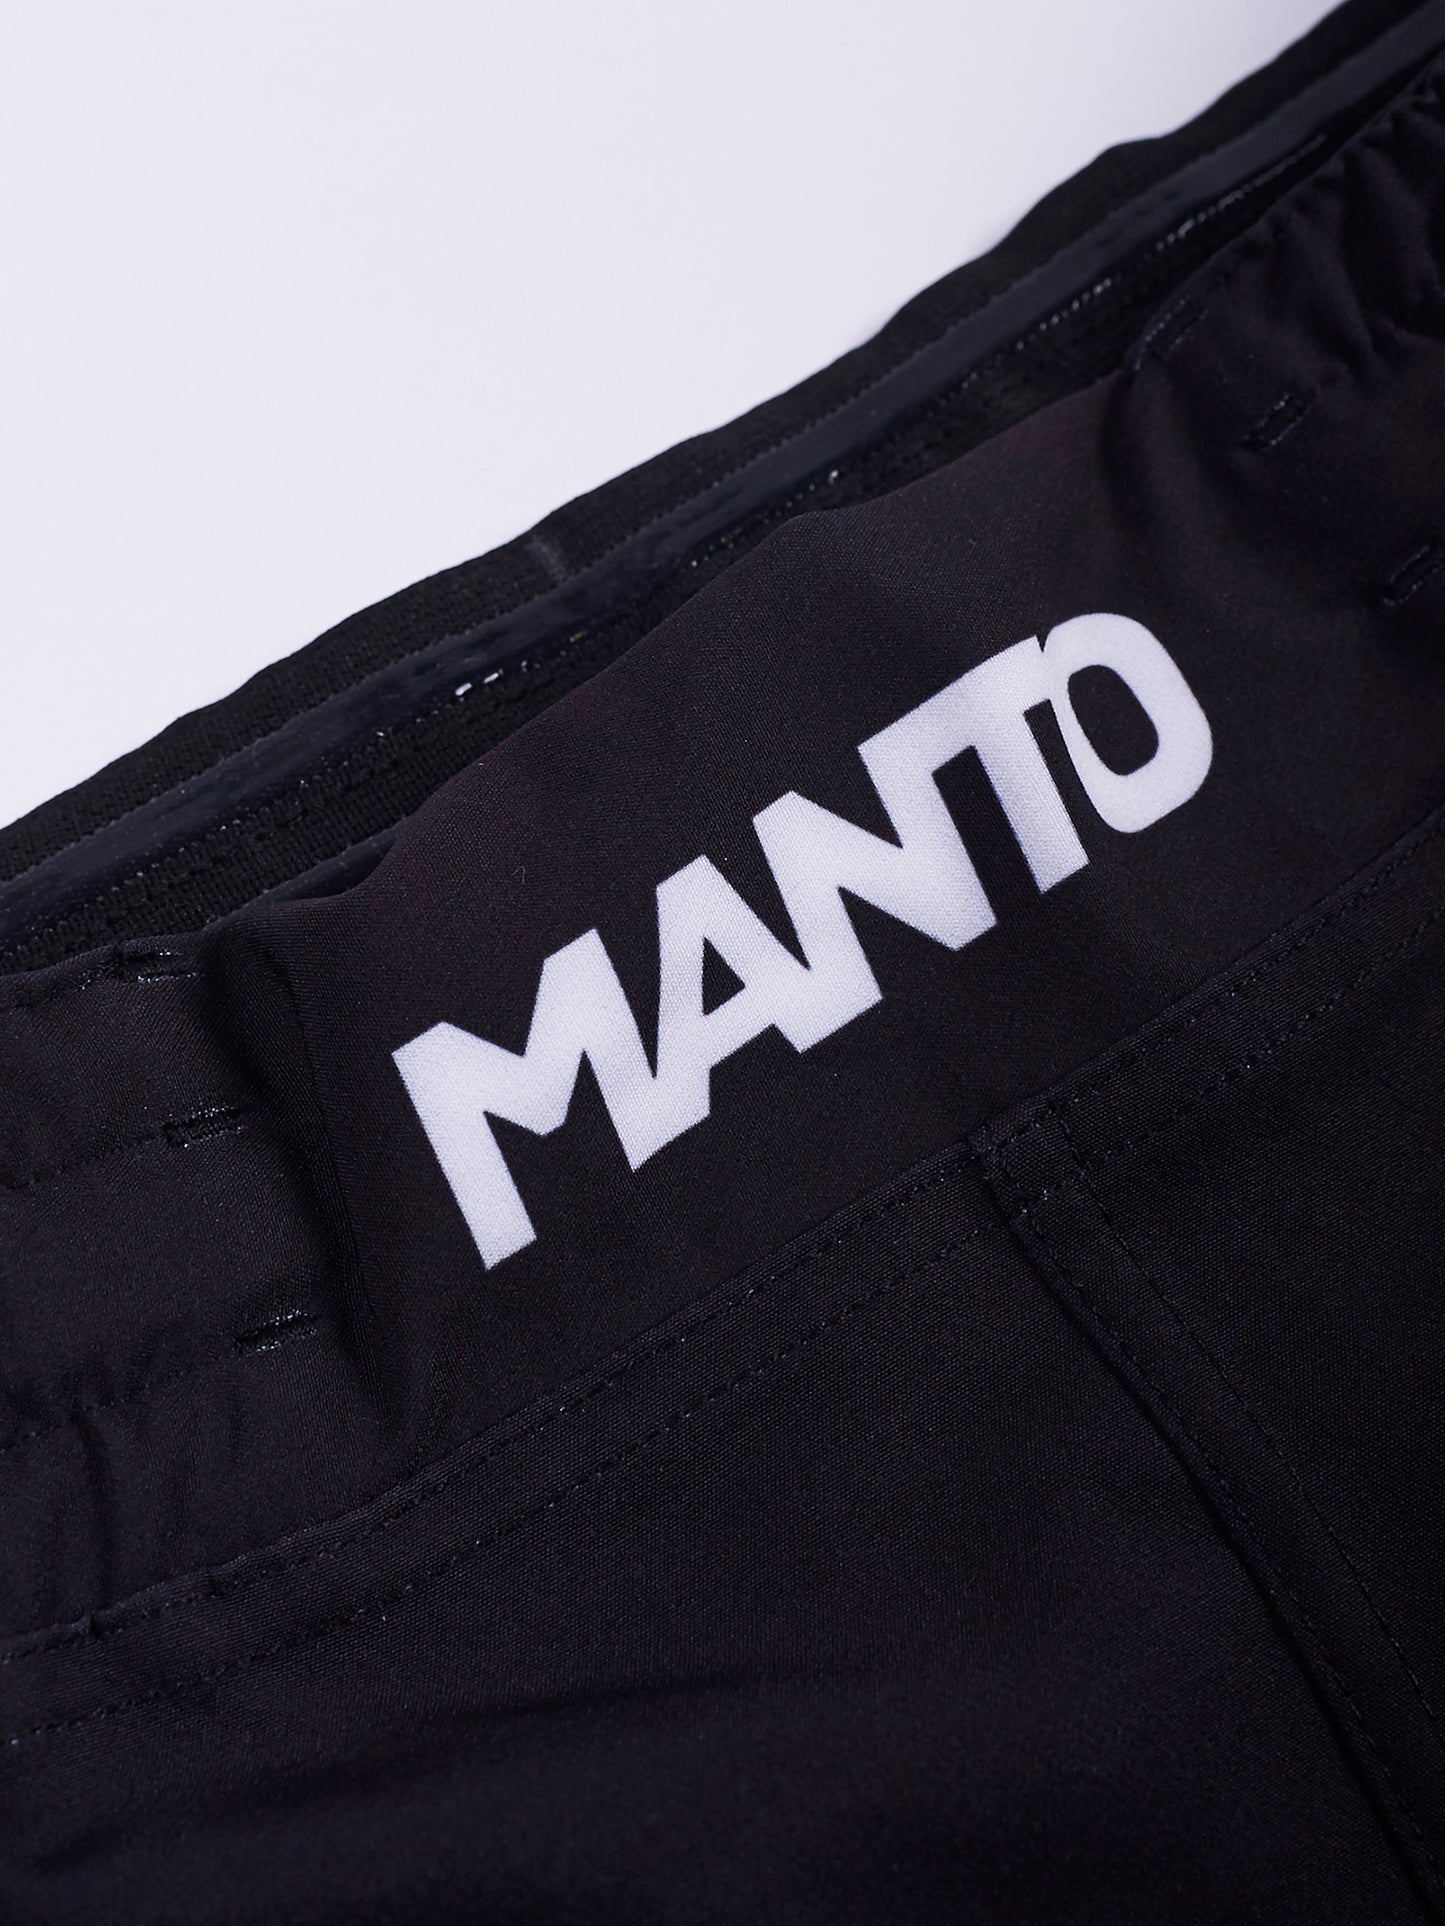 MANTO fight shorts SOCIETY - Schwarz